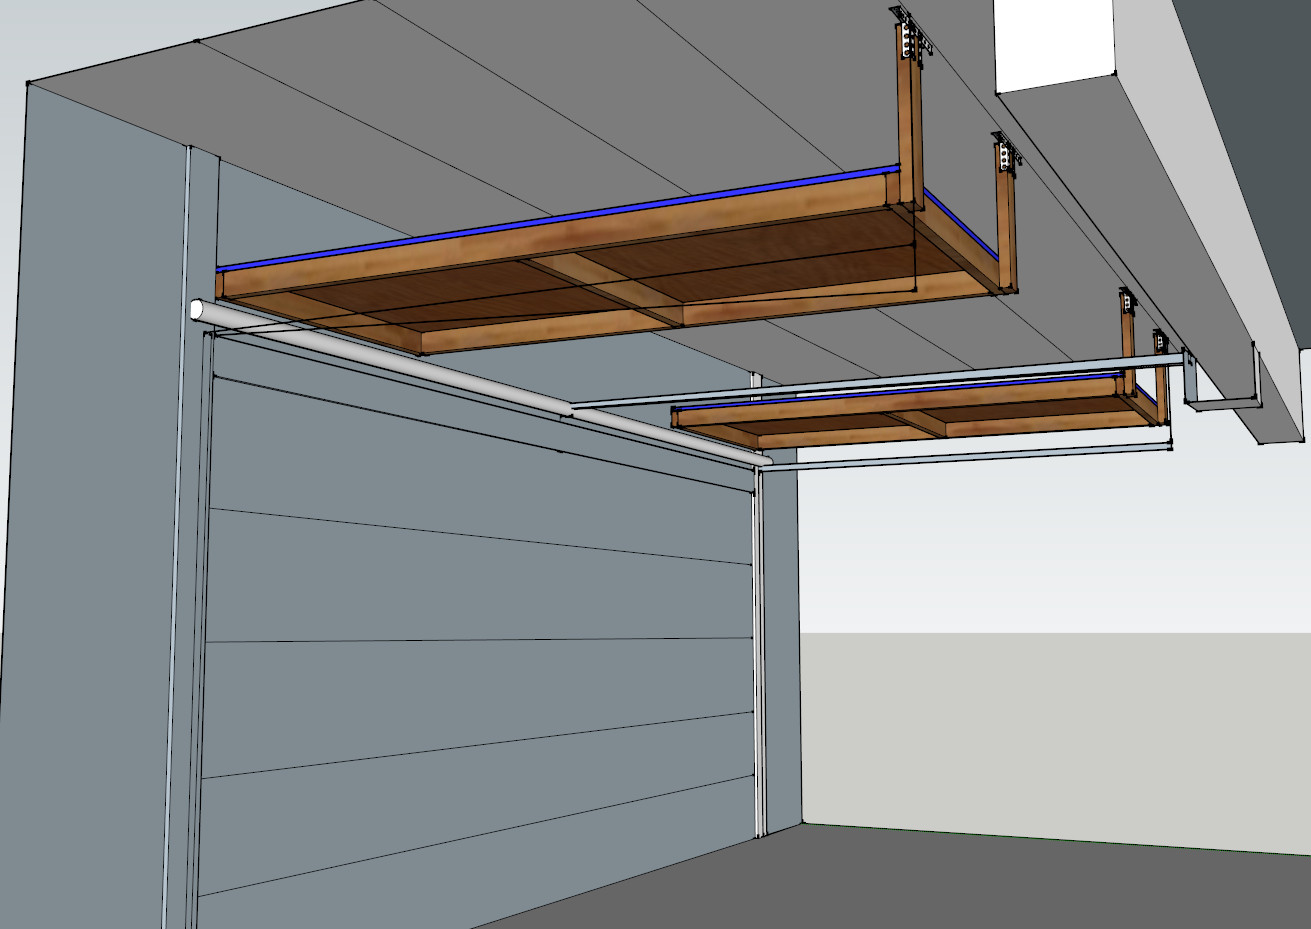 Best ideas about Above Garage Door Storage
. Save or Pin Garage Door Storage Project DIY QuickCrafter Now.